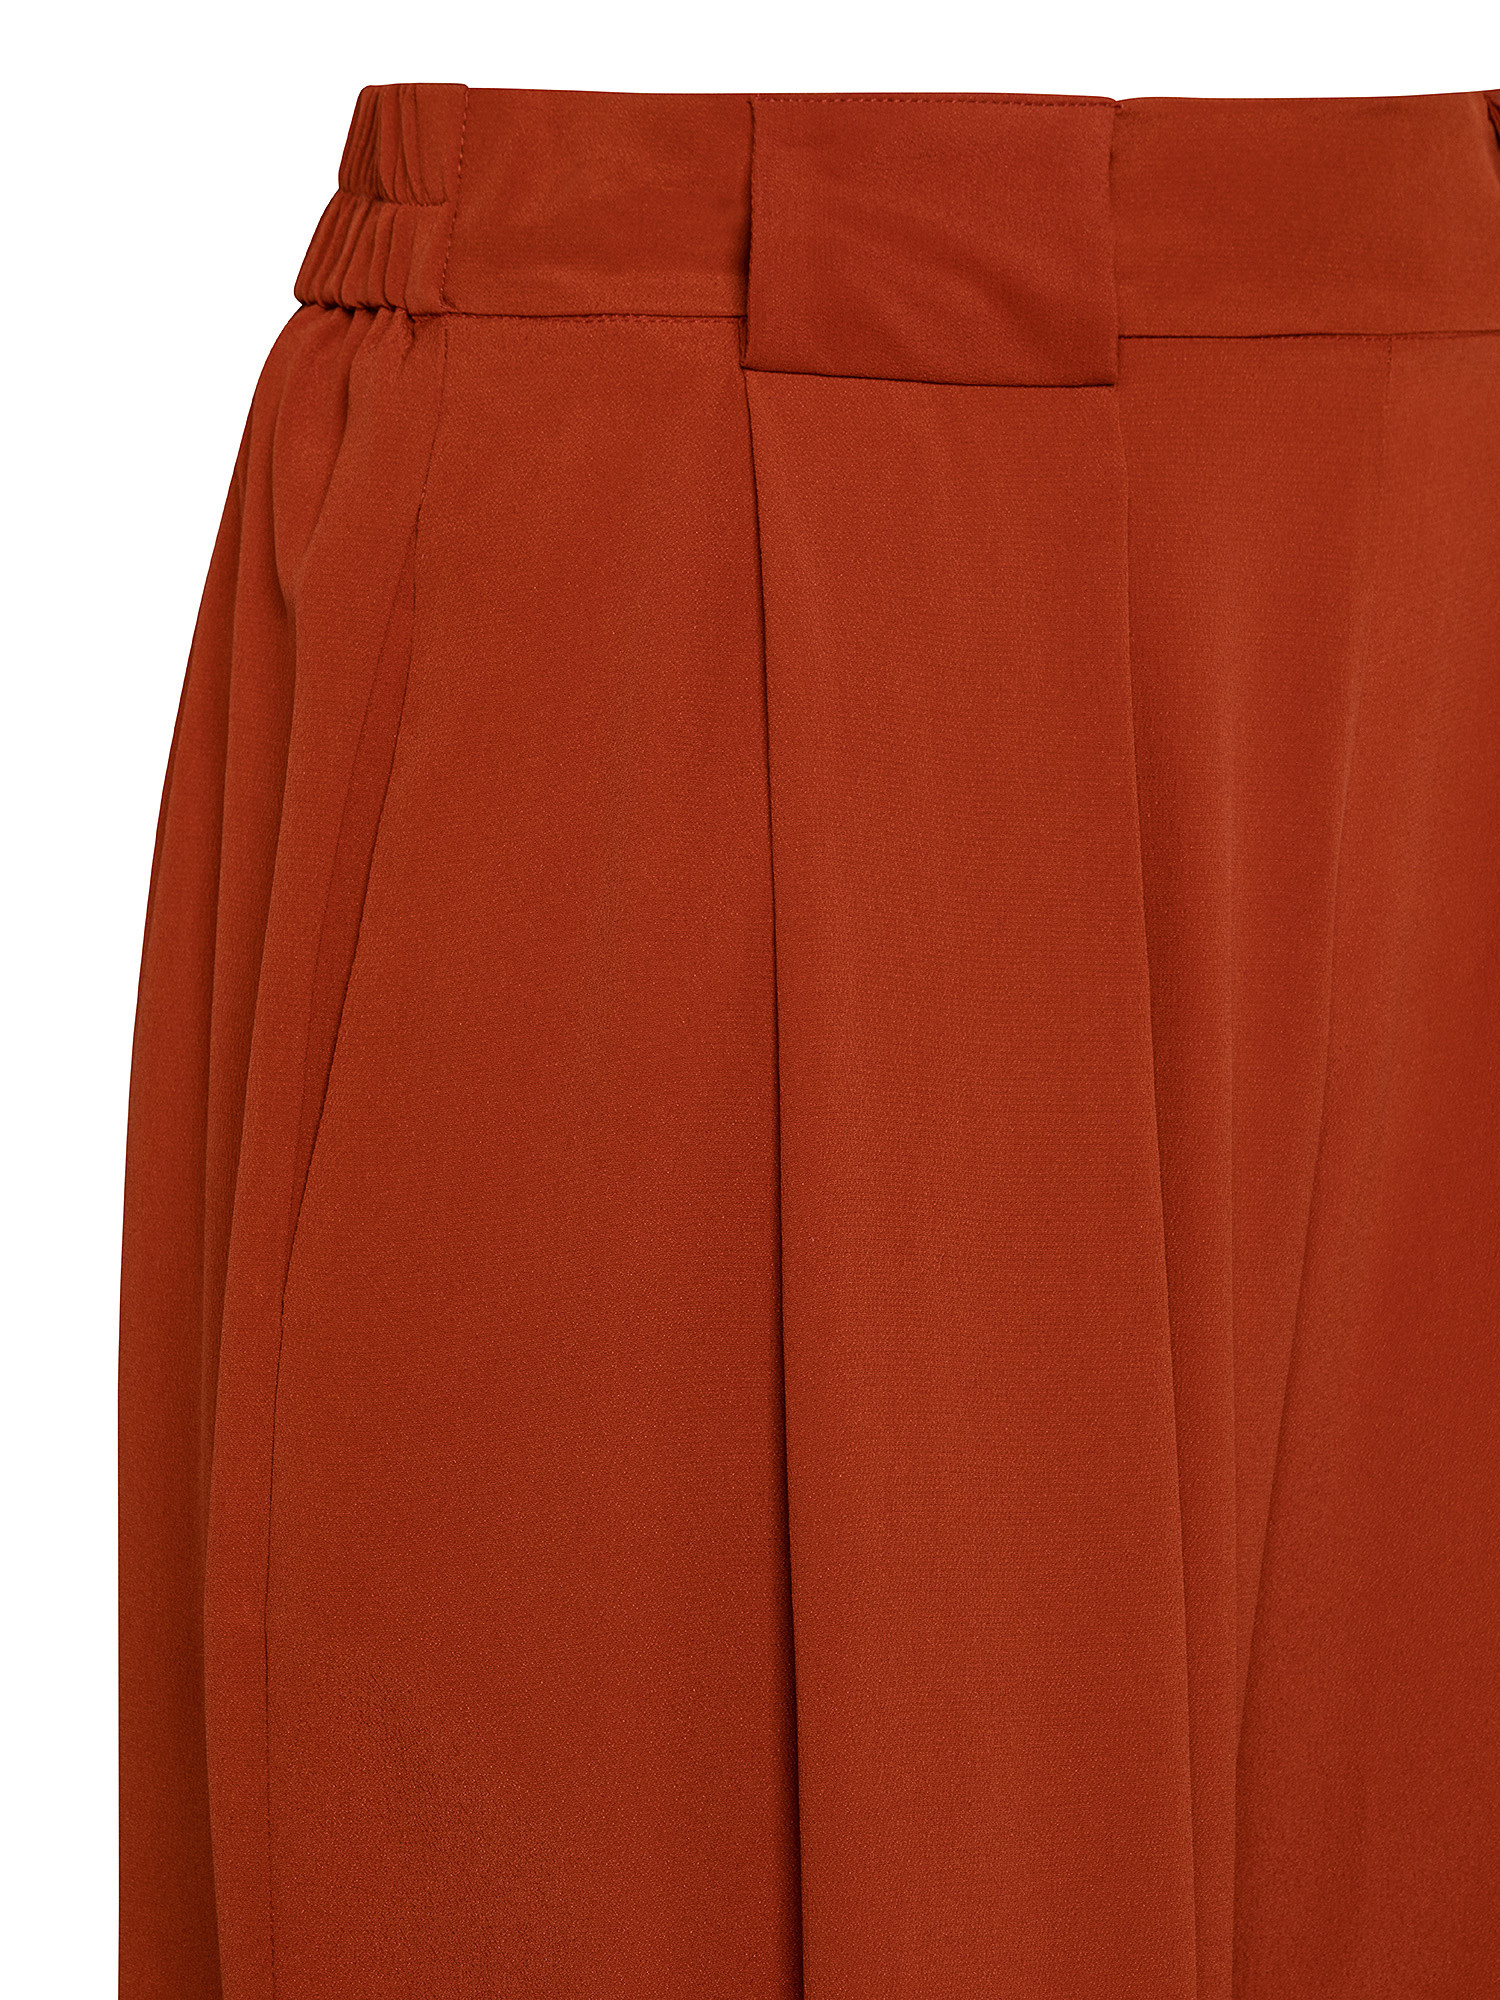 Pantaloni Aspen in misto cràªpe-seta, Rosso, large image number 2